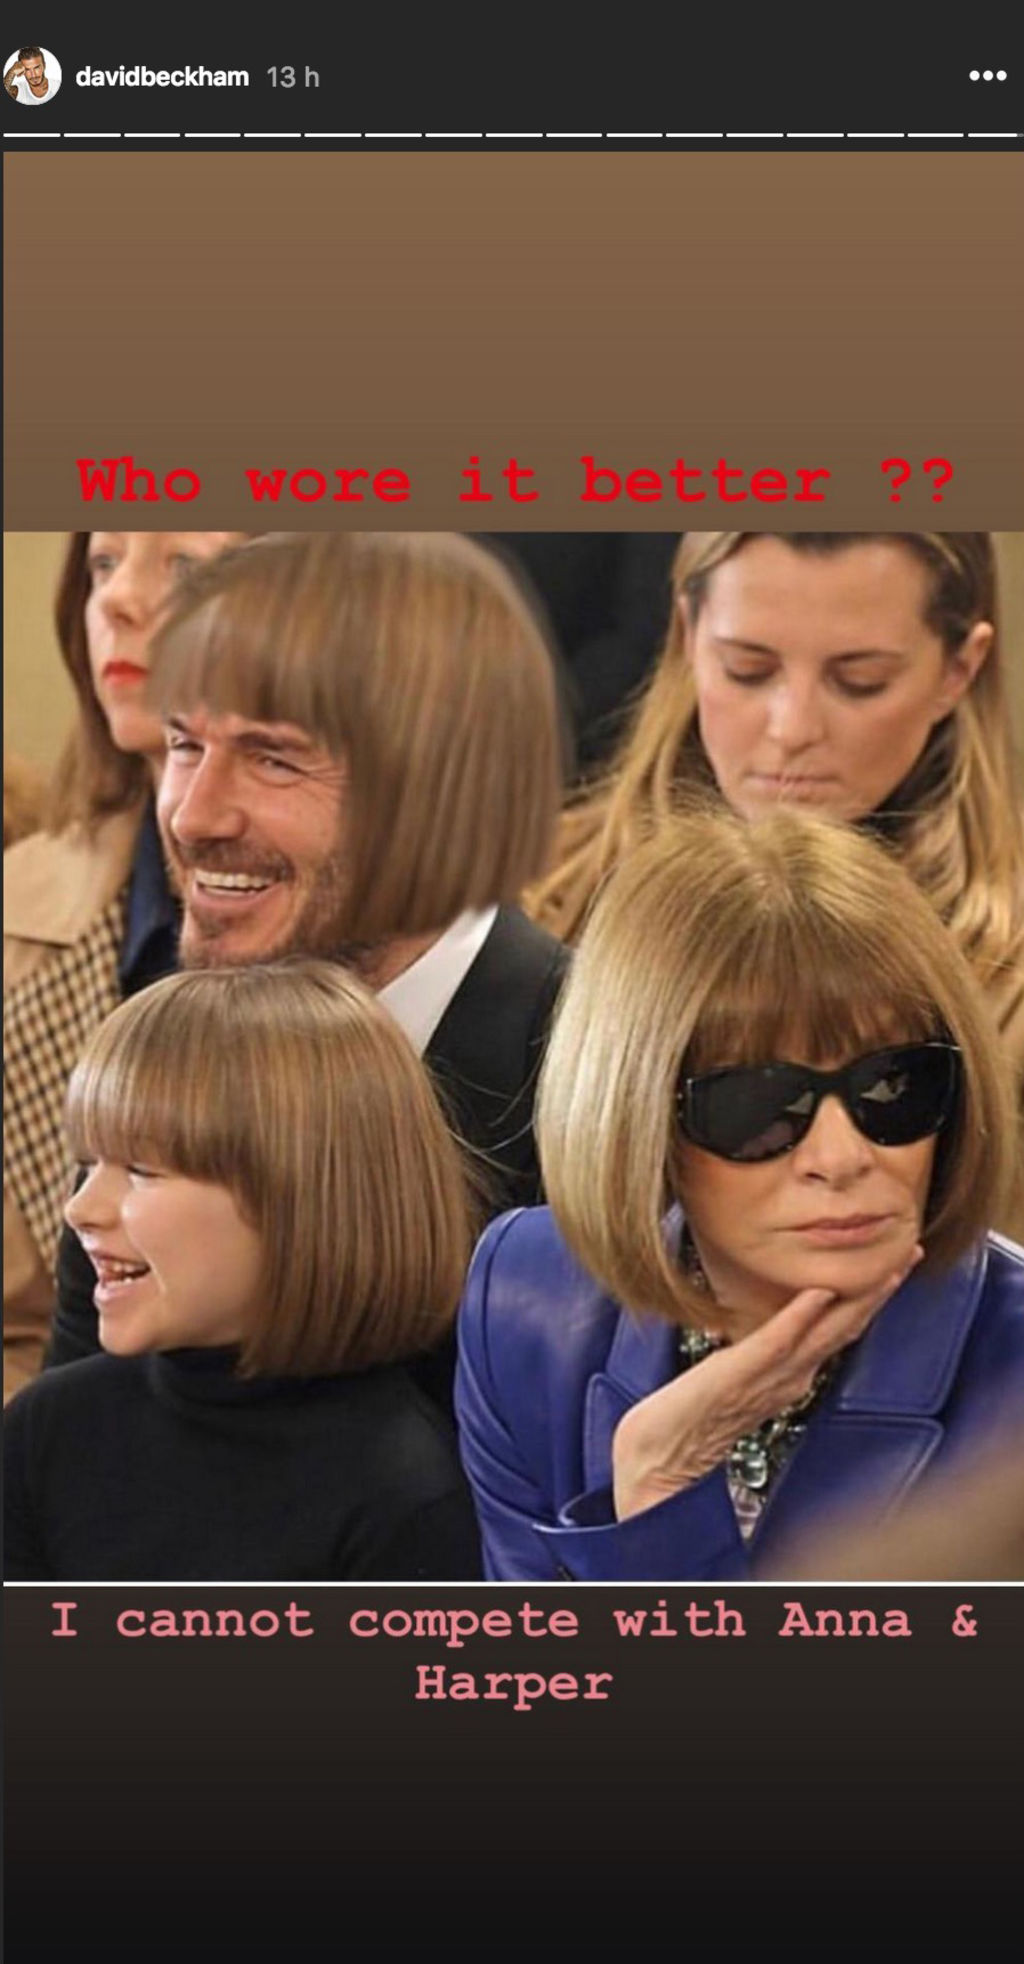 Quand David Beckham s’amuse de la ressemblance de la coiffure de sa fille avec celle d’Anna Wintour